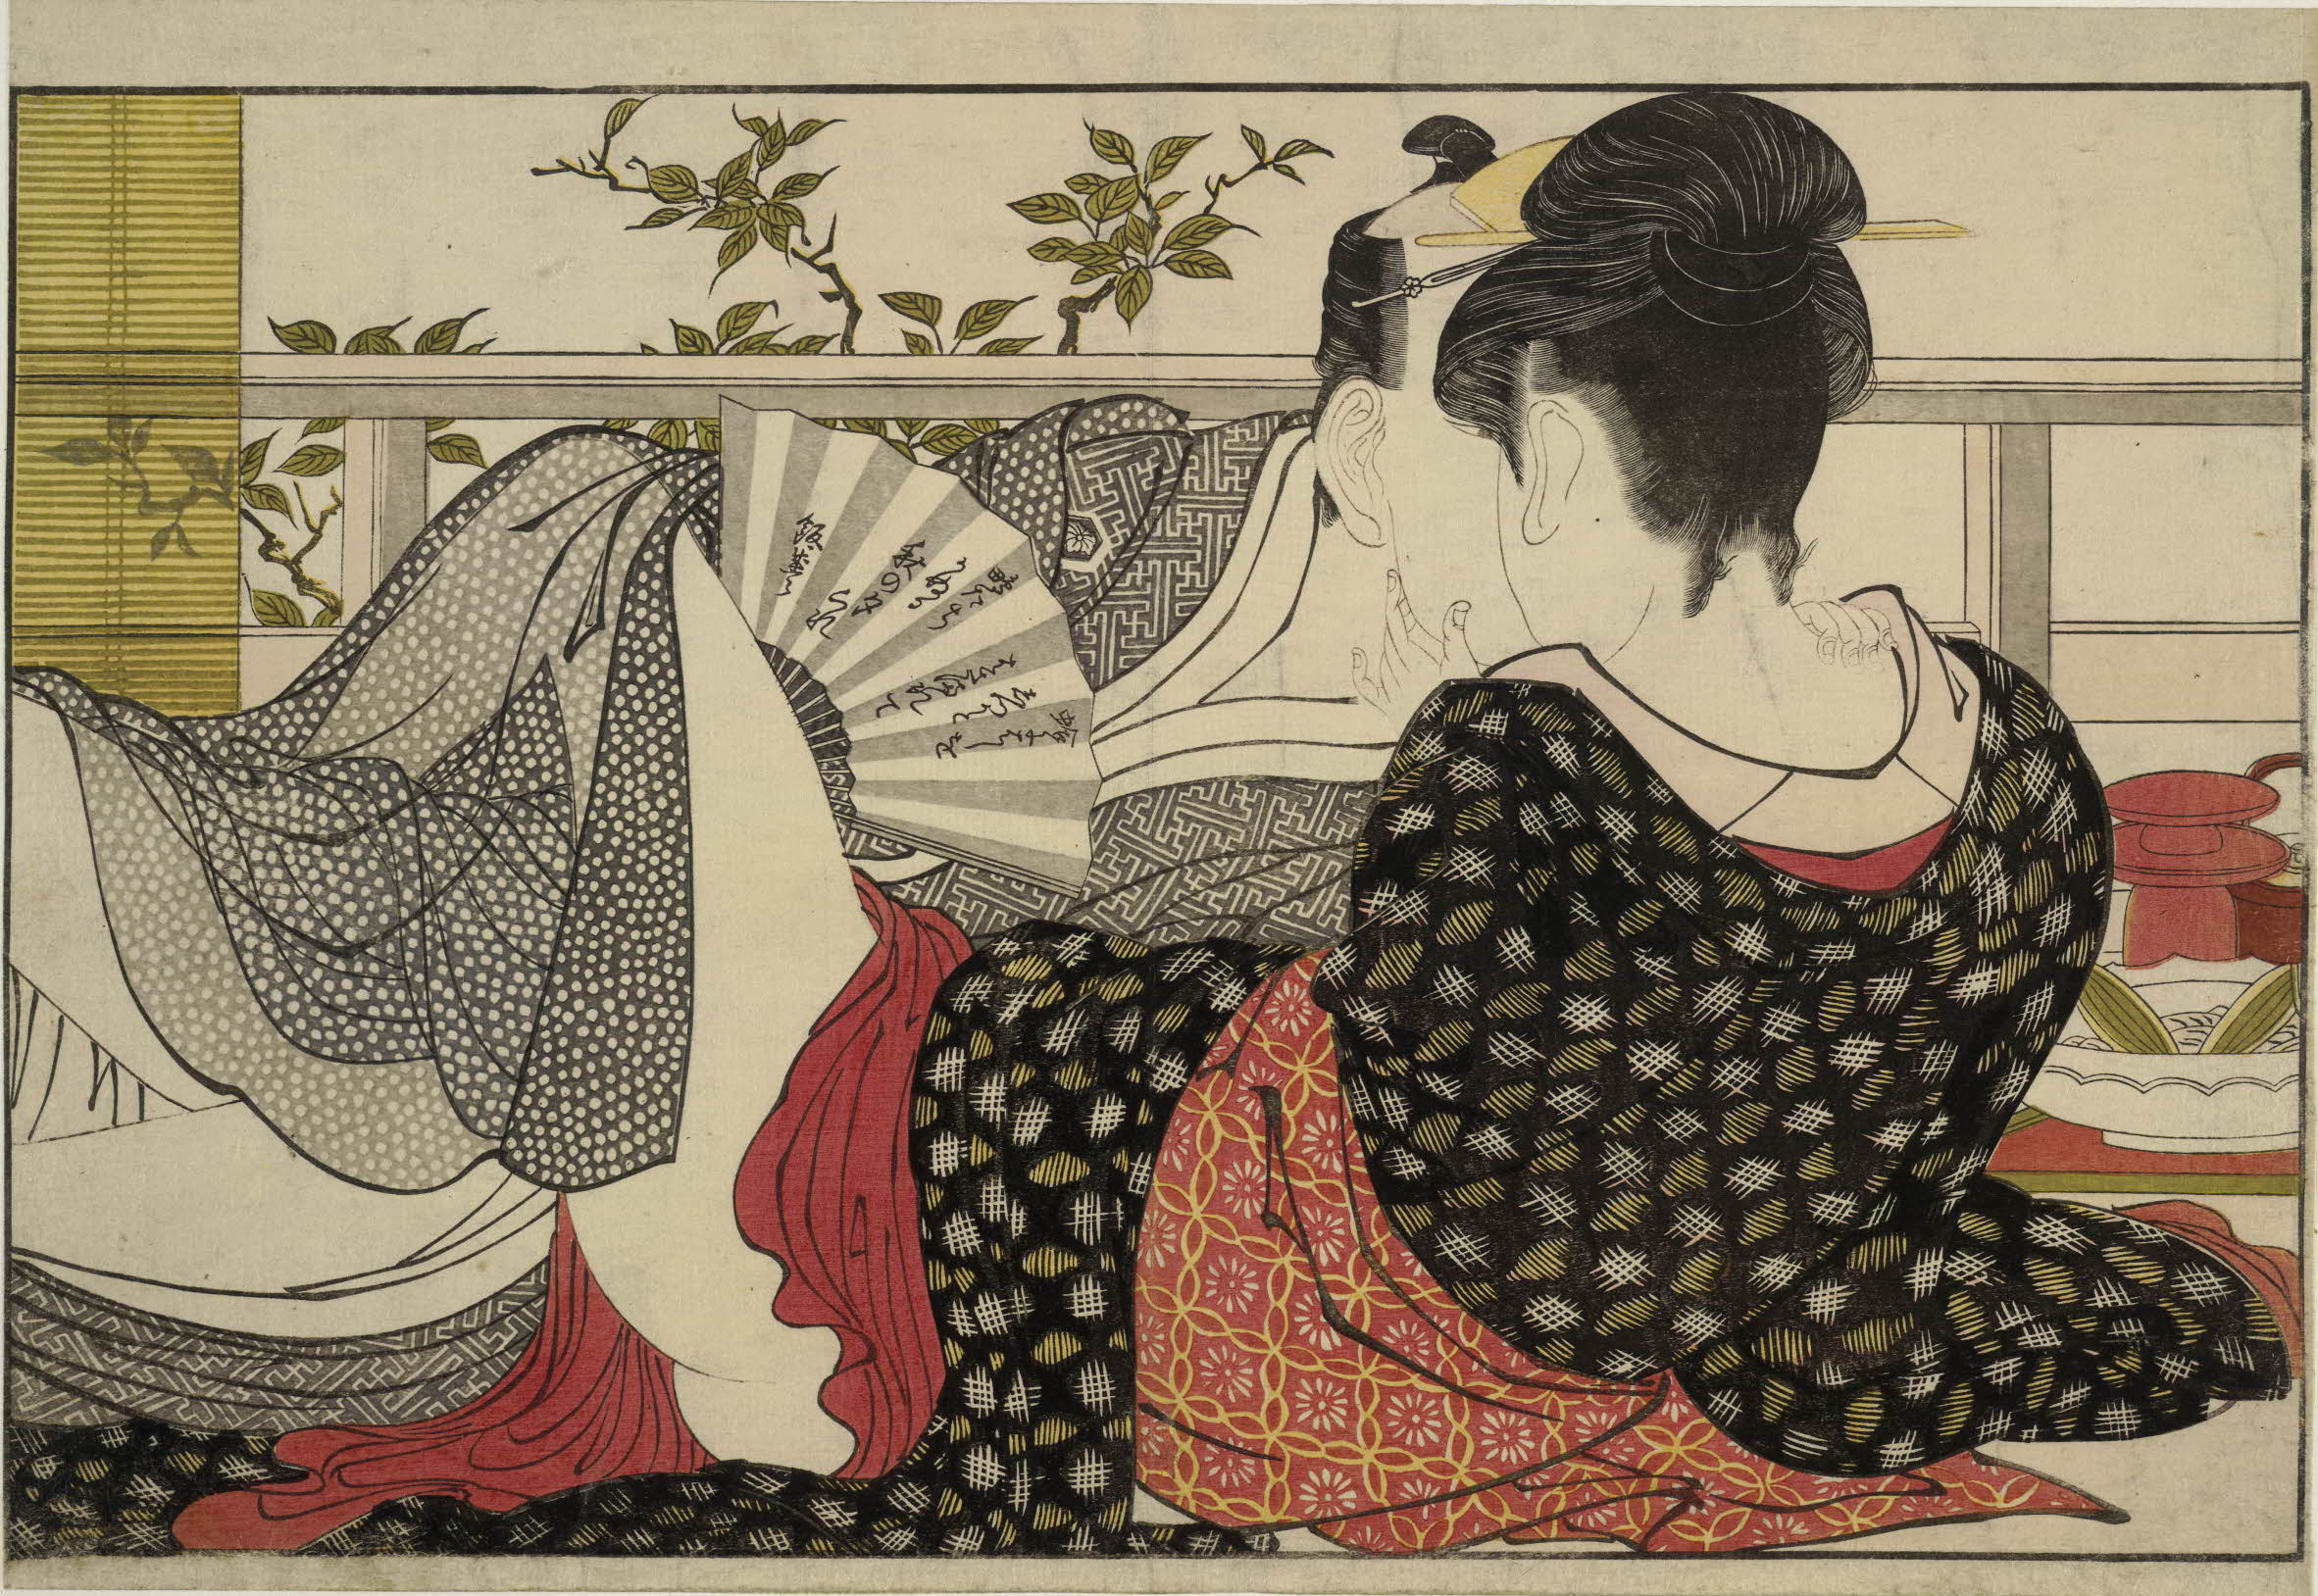 Utamakura (Poem of the Pillow) by Kitagawa Utamaro - 1788 - 254 x 369 mm British Museum